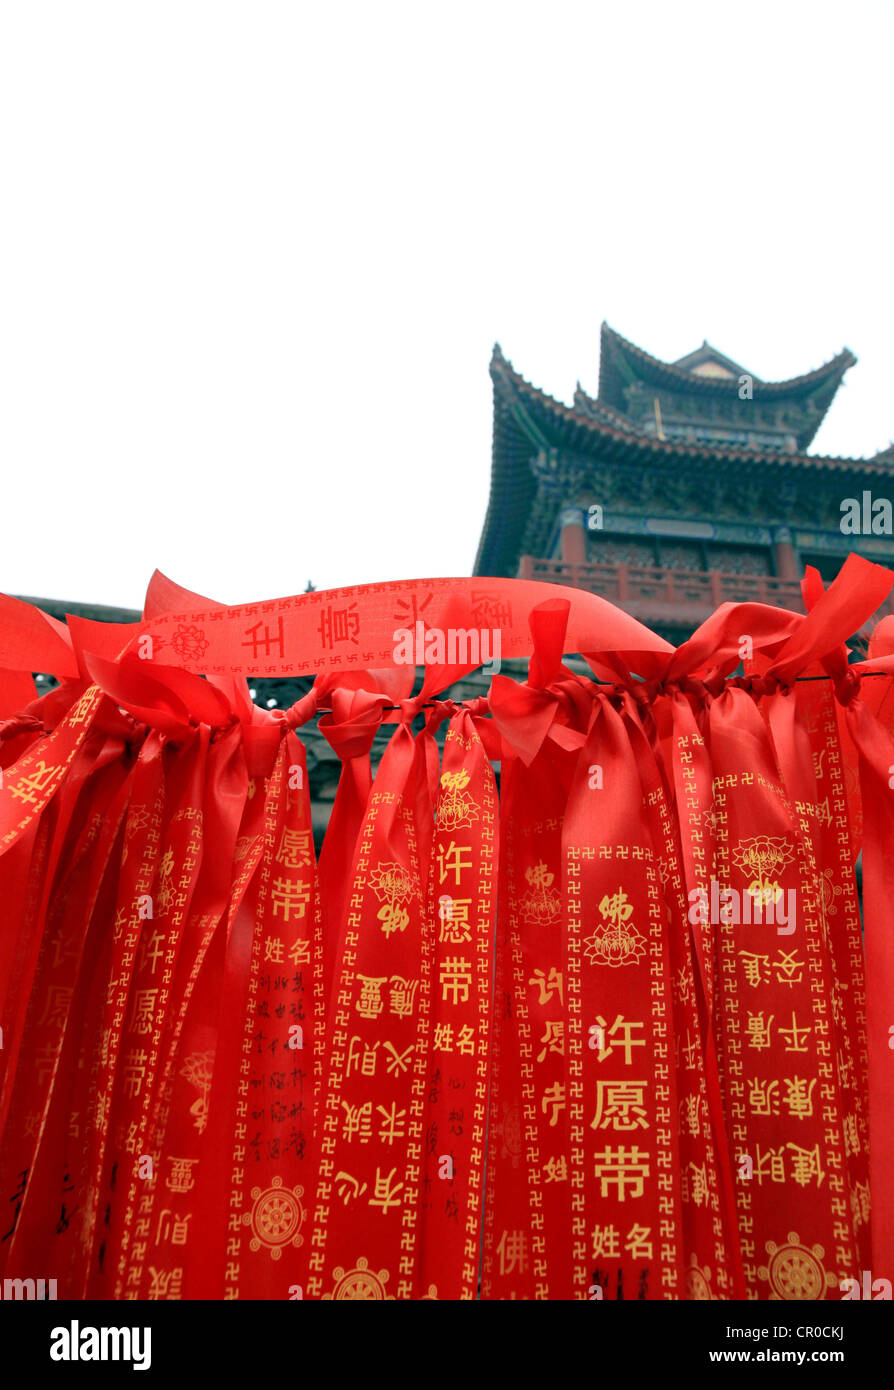 Souhaitez faire qi yuan (rubans) dai hung dans un temple bouddhiste à Chongqing. Banque D'Images